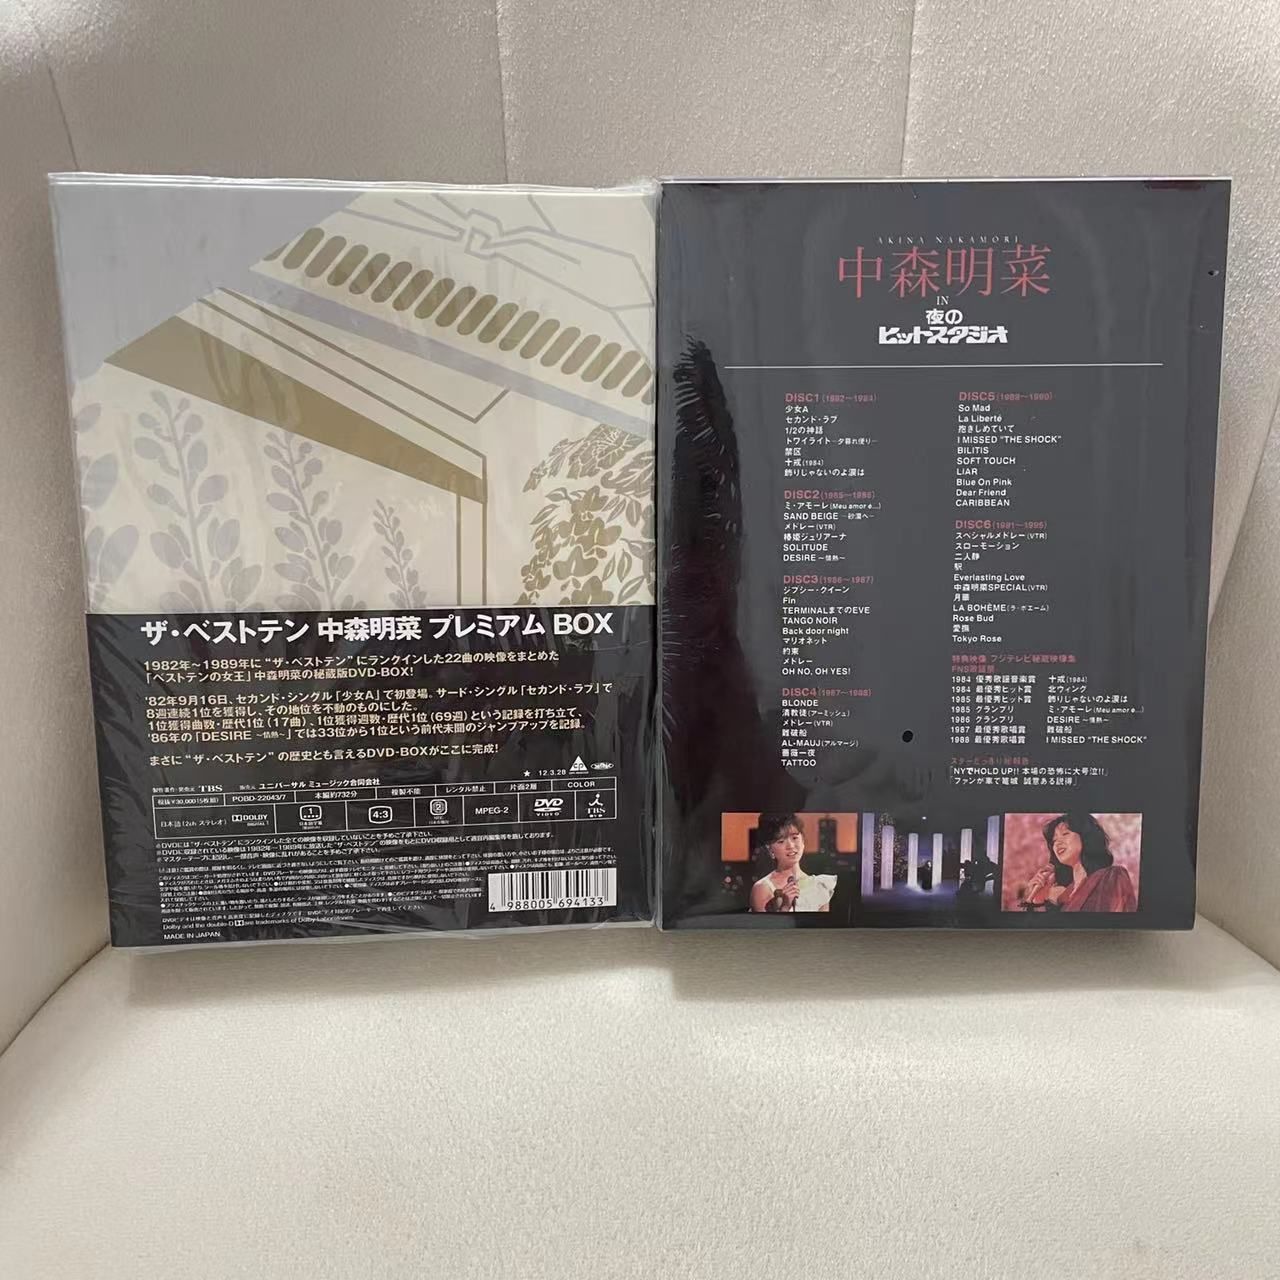 中森明菜 in 夜のヒットスタジオ ザ・ベストテン DVD - DVD